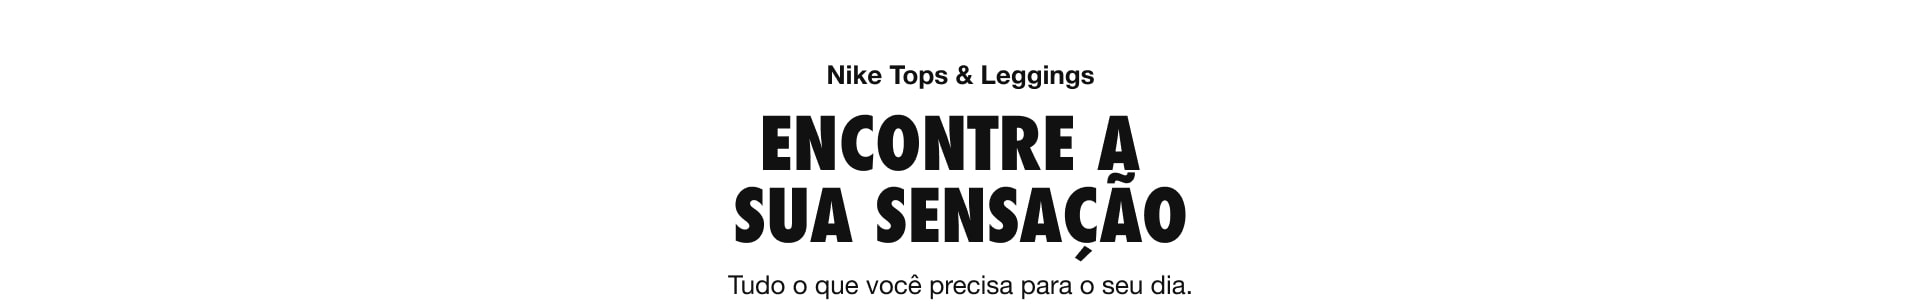 Nike Tops & Leggings - Encontre a sua sensação - Tudo o que você precisa para o seu dia.